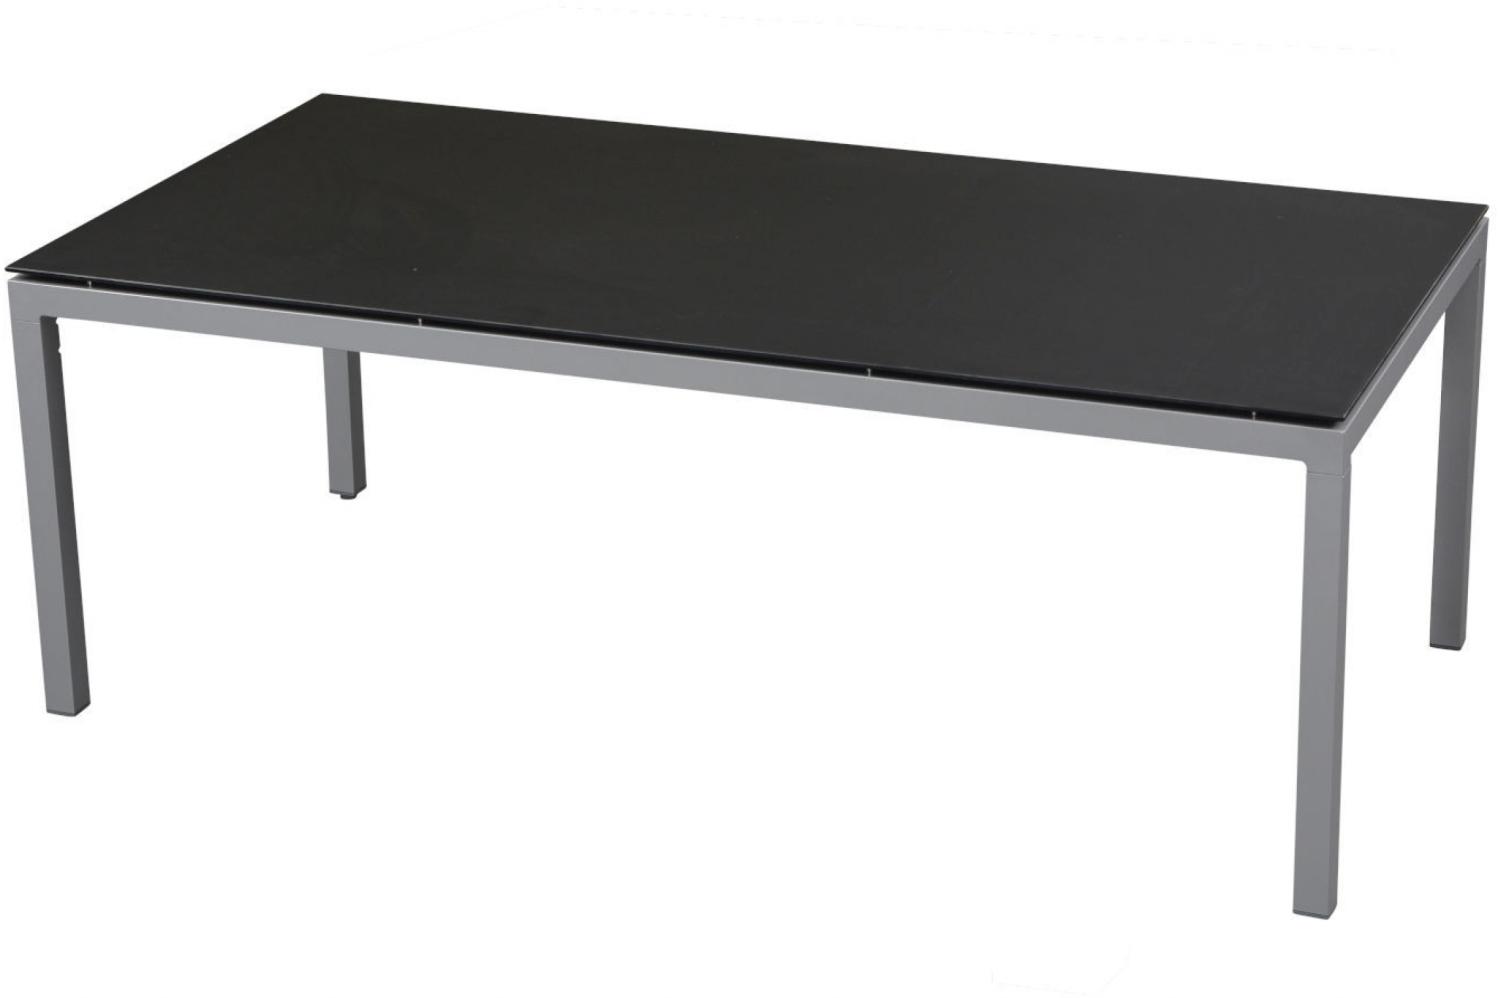 Inko Gartentisch Aluminium graphit 200x100 cm Terrassentisch Tischplatte nach Wahl Deropal anthrazit Bild 1